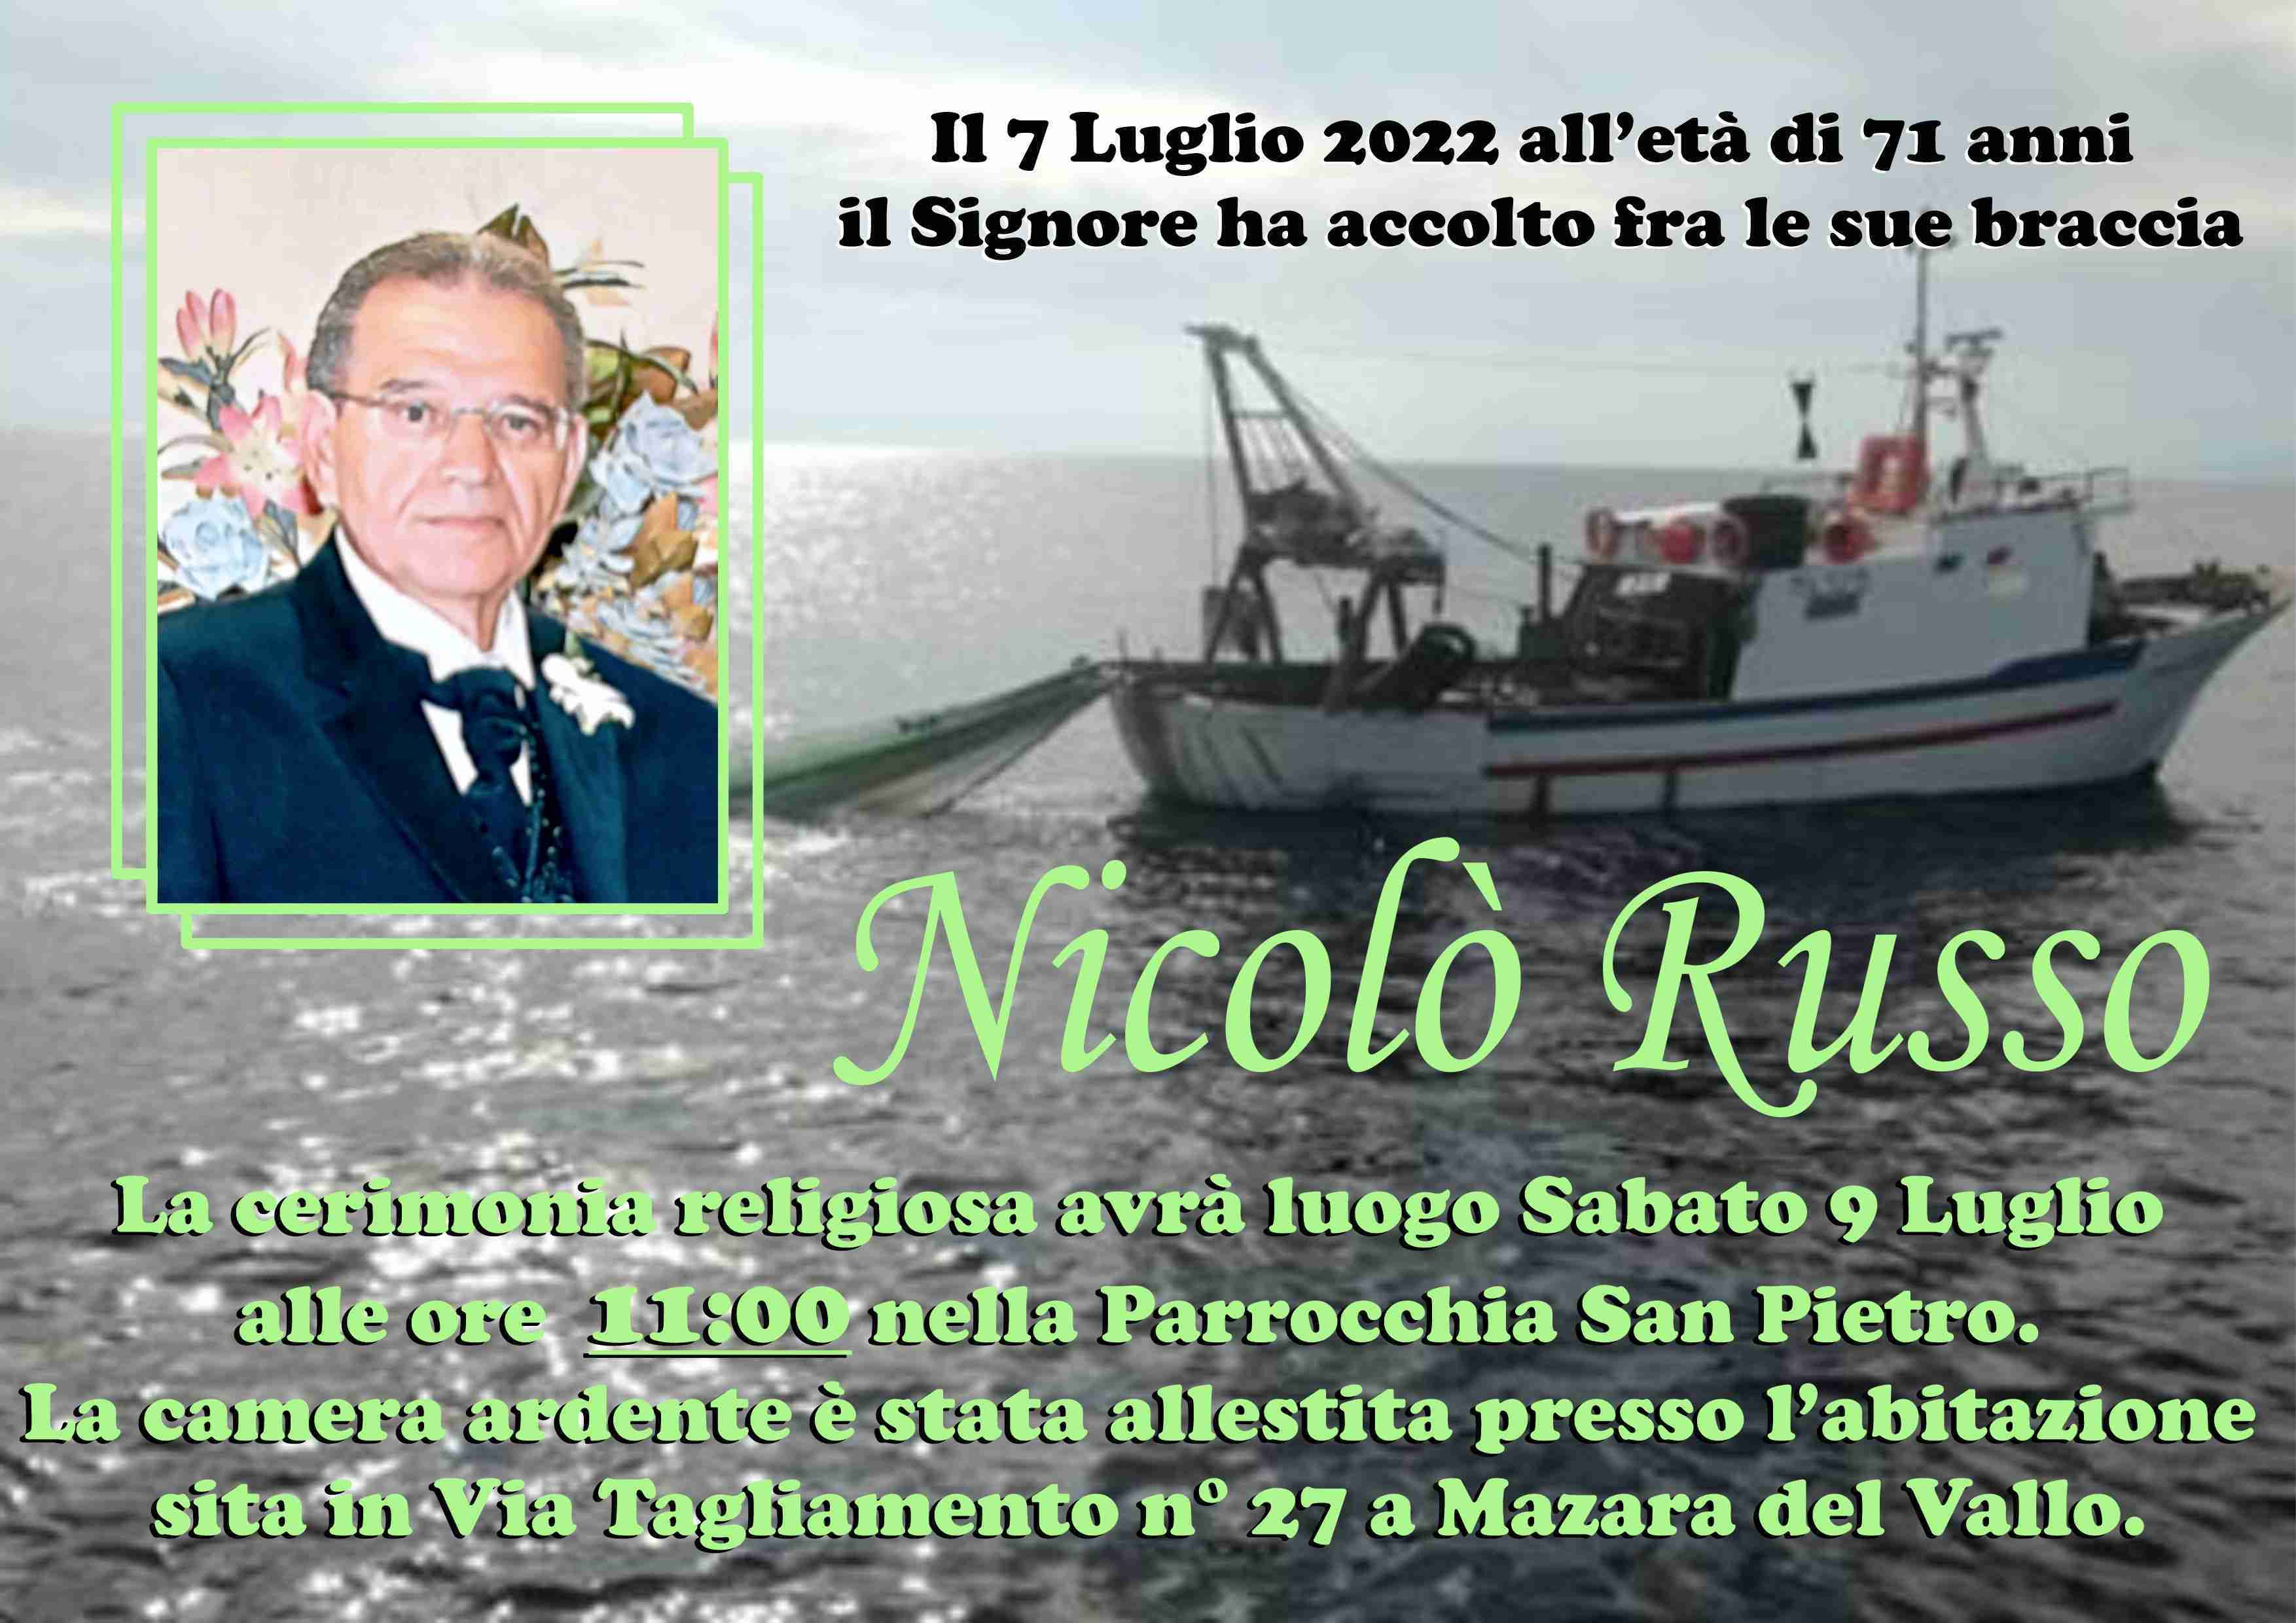 Nicolò Russo